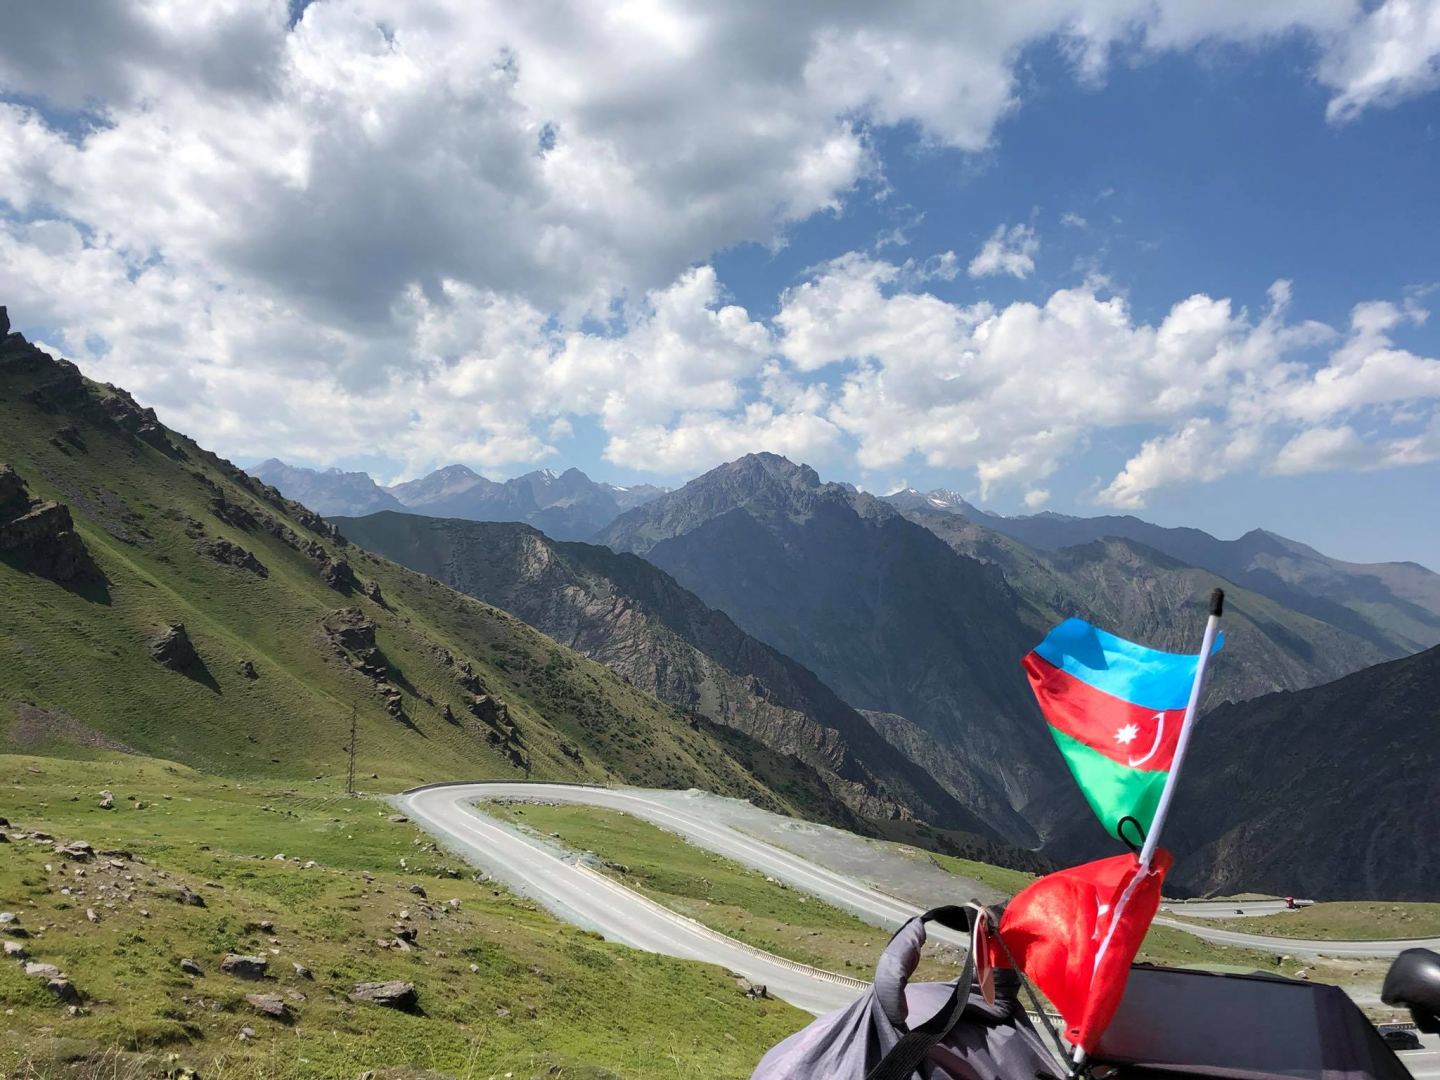 7134 метра! Азербайджанец на велосипеде впервые в истории покоряет одну из высочайших вершин Центральной Азии  (ФОТО)